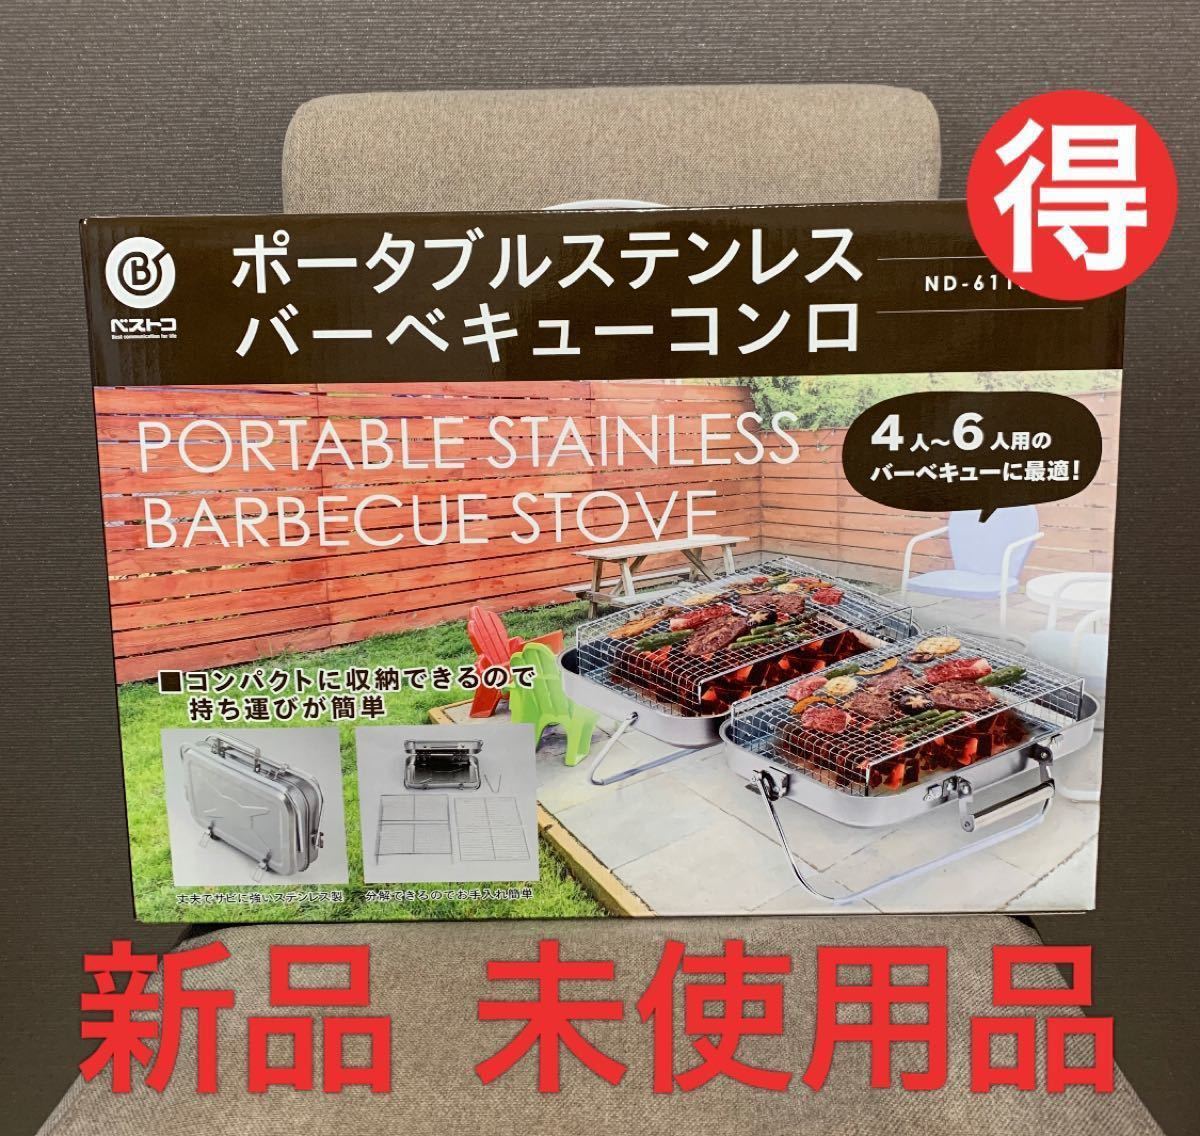 ★新品 送料込★ BBQ用 ベストコ アタッシュケース型 ND-6113 